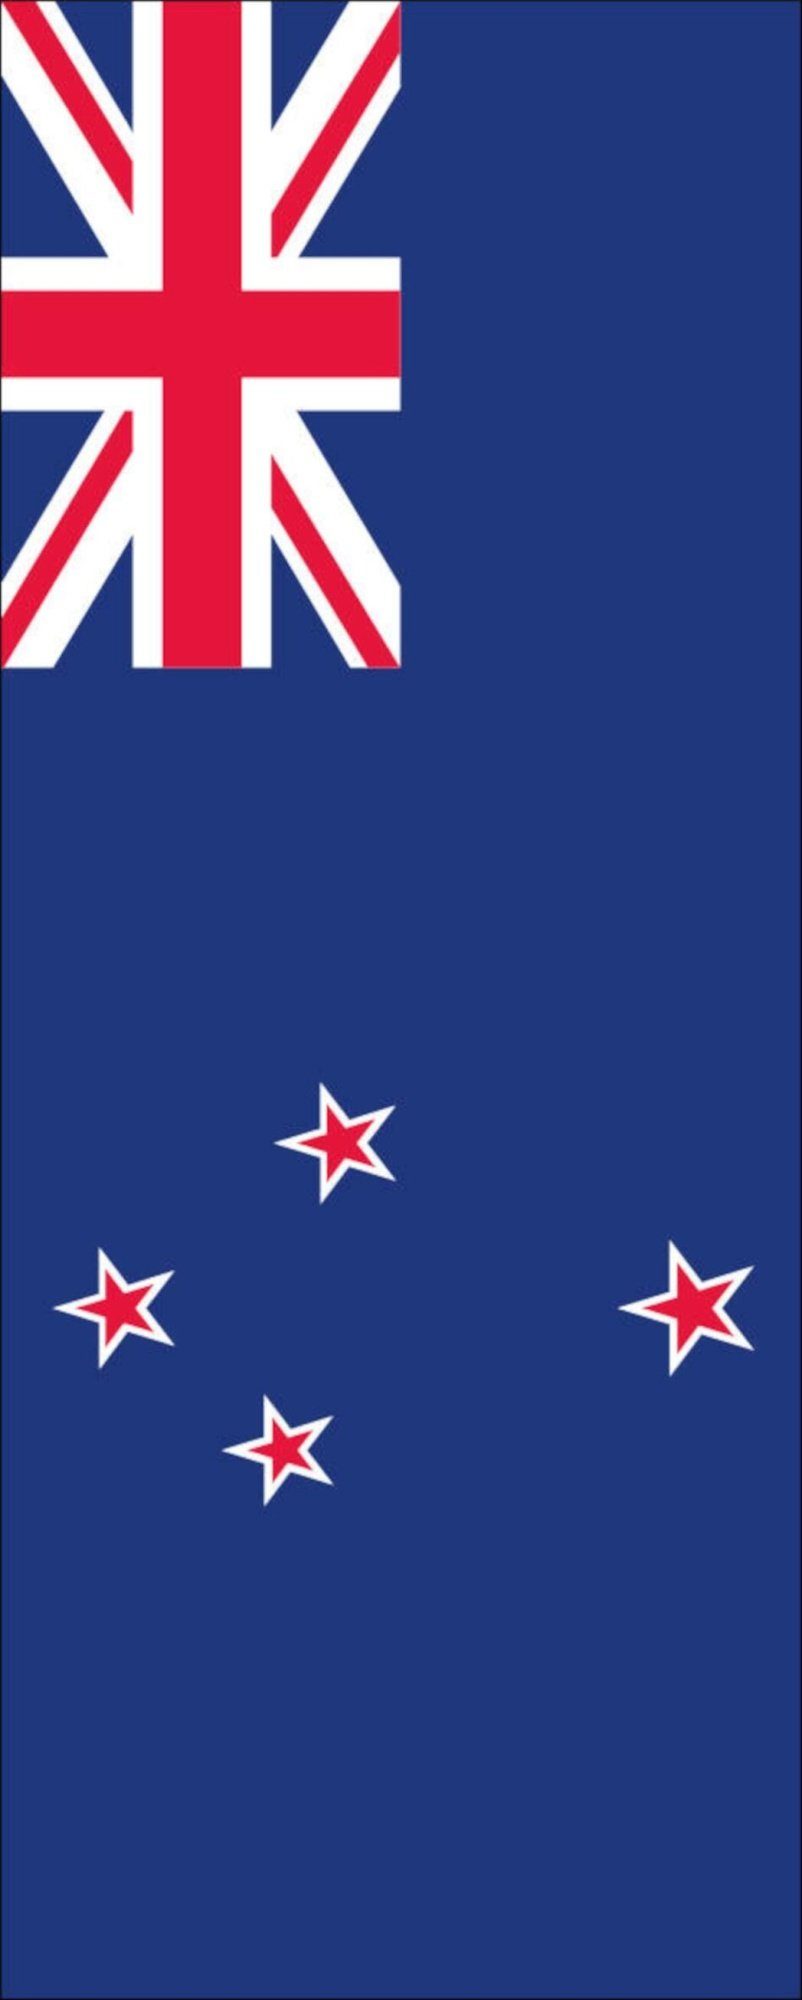 160 g/m² flaggenmeer Flagge Hochformat Neuseeland